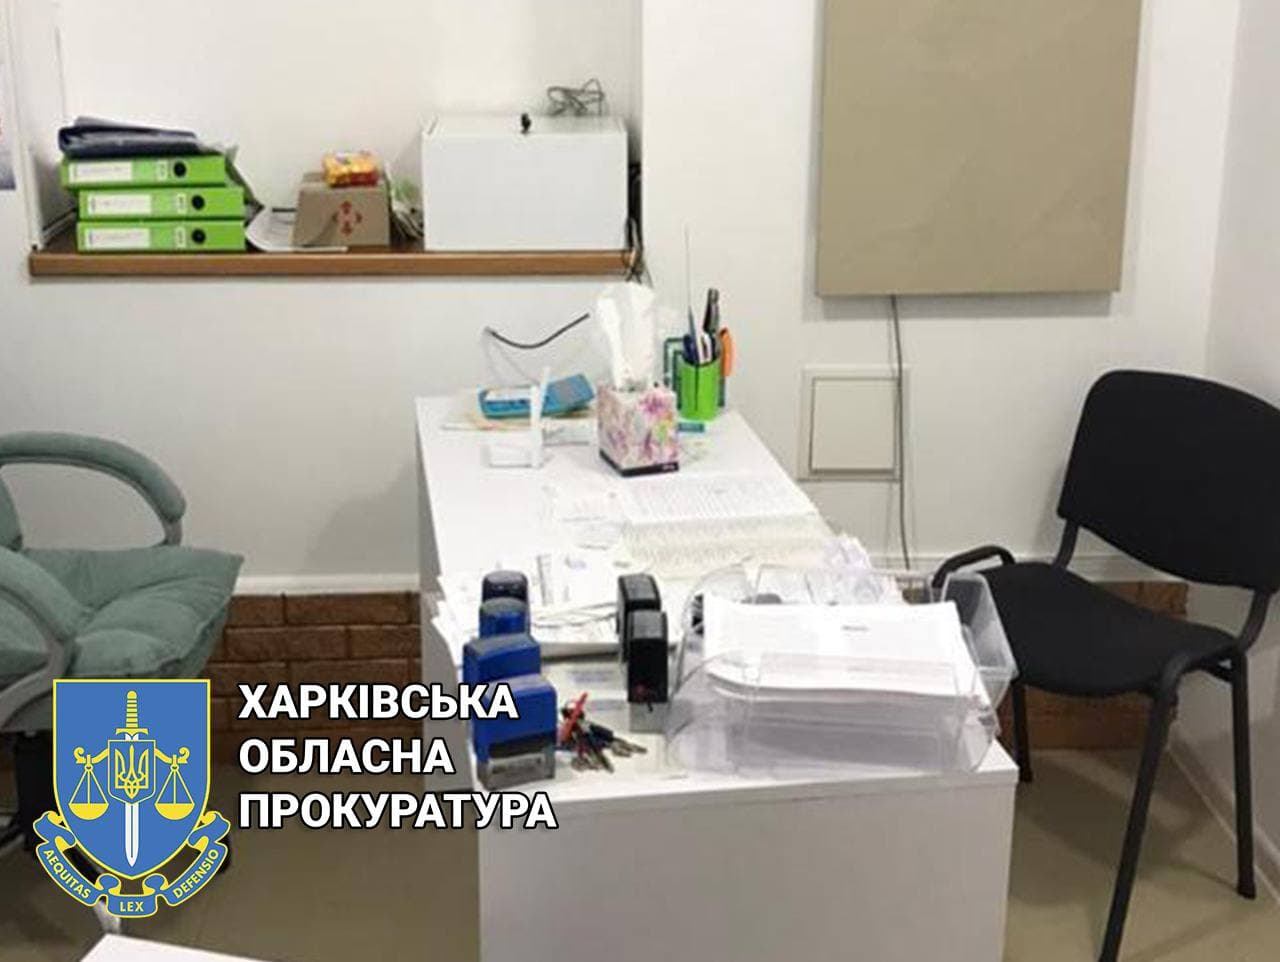 Криминал Харьков: Врач незаконно выдавала рецепты на приобретение наркотиков